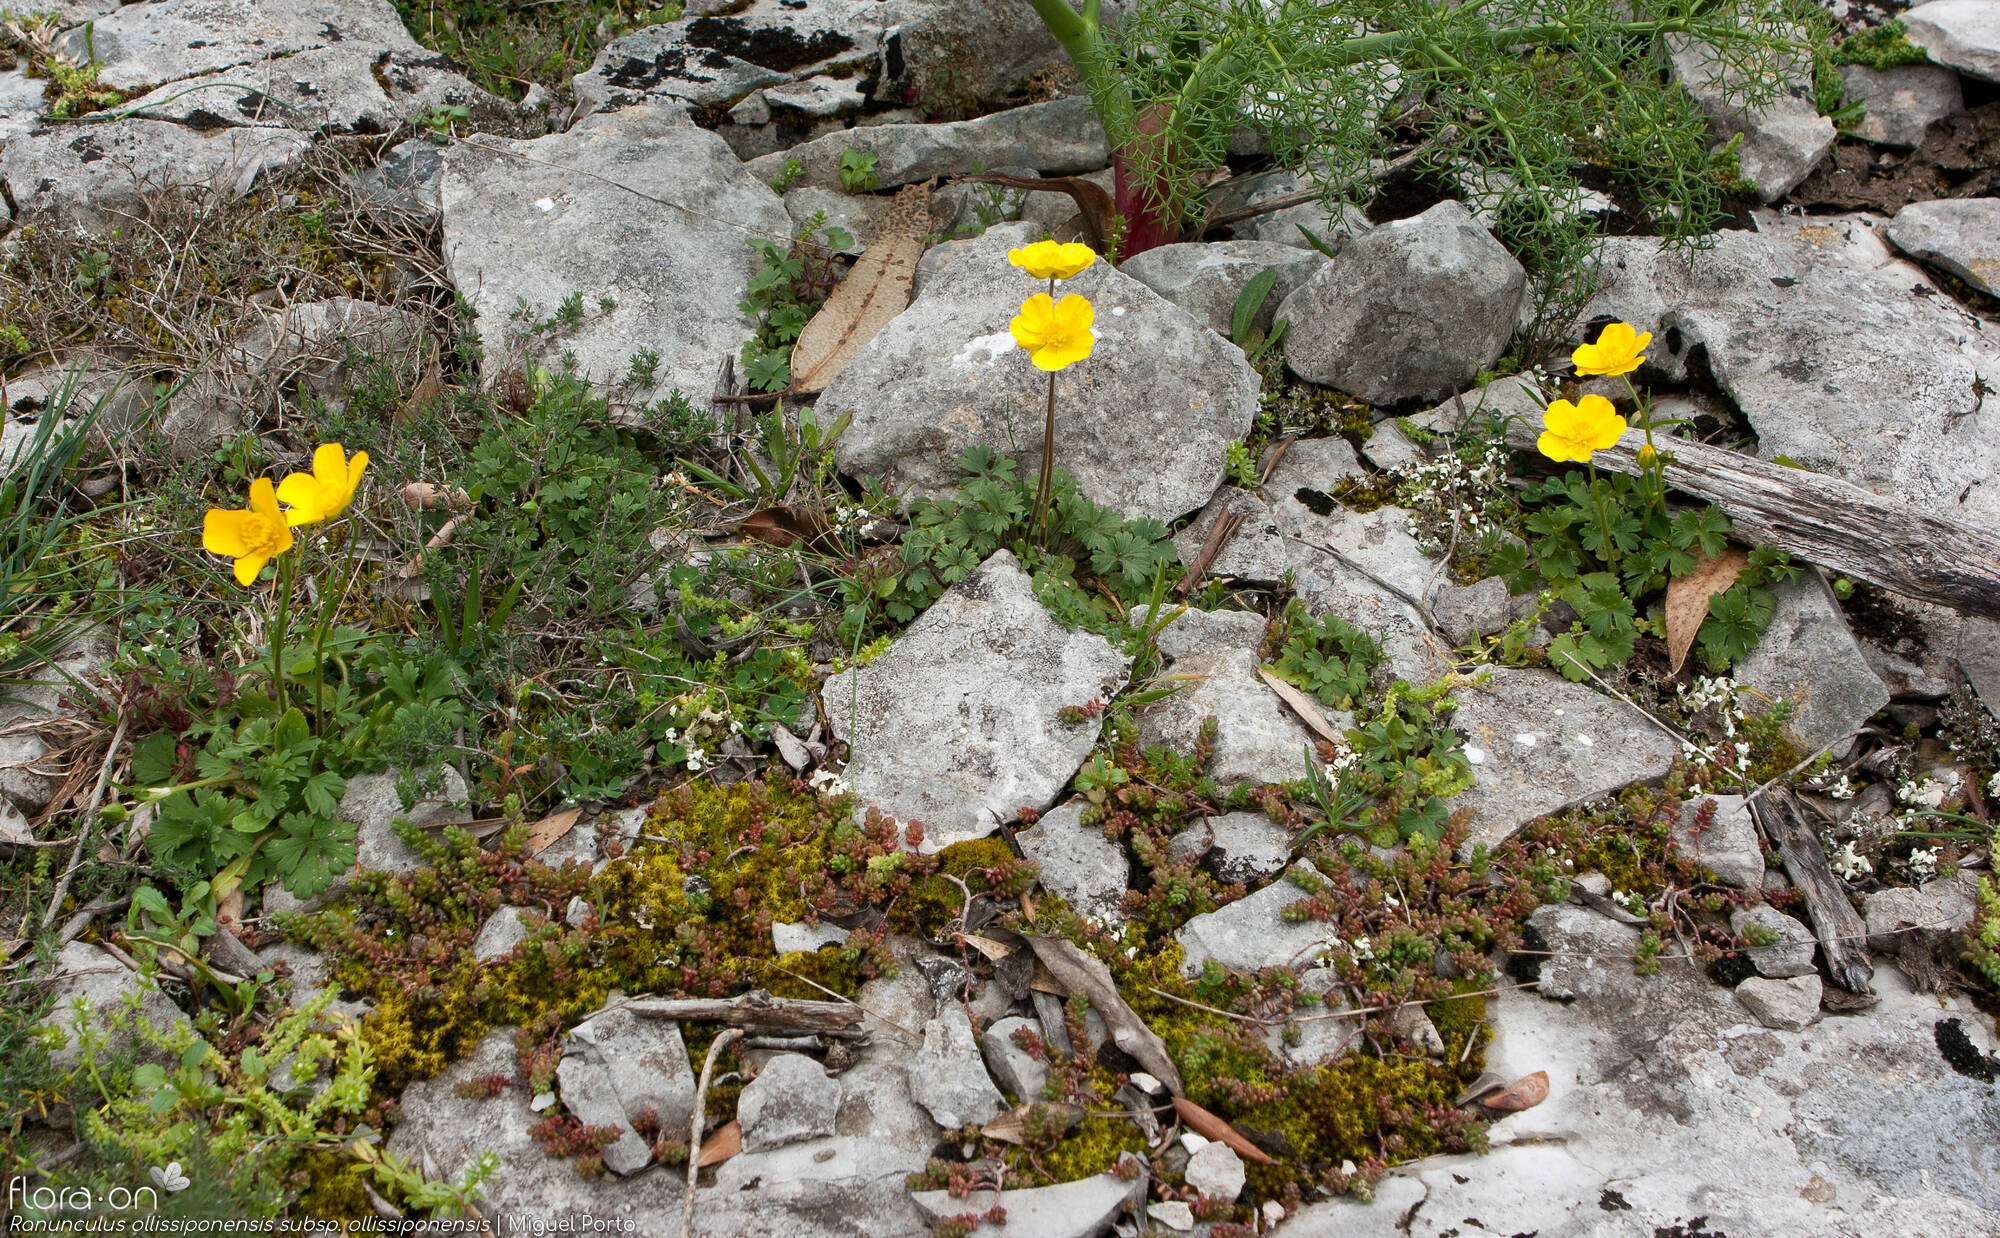 Ranunculus ollissiponensis ollissiponensis - Habitat | Miguel Porto; CC BY-NC 4.0